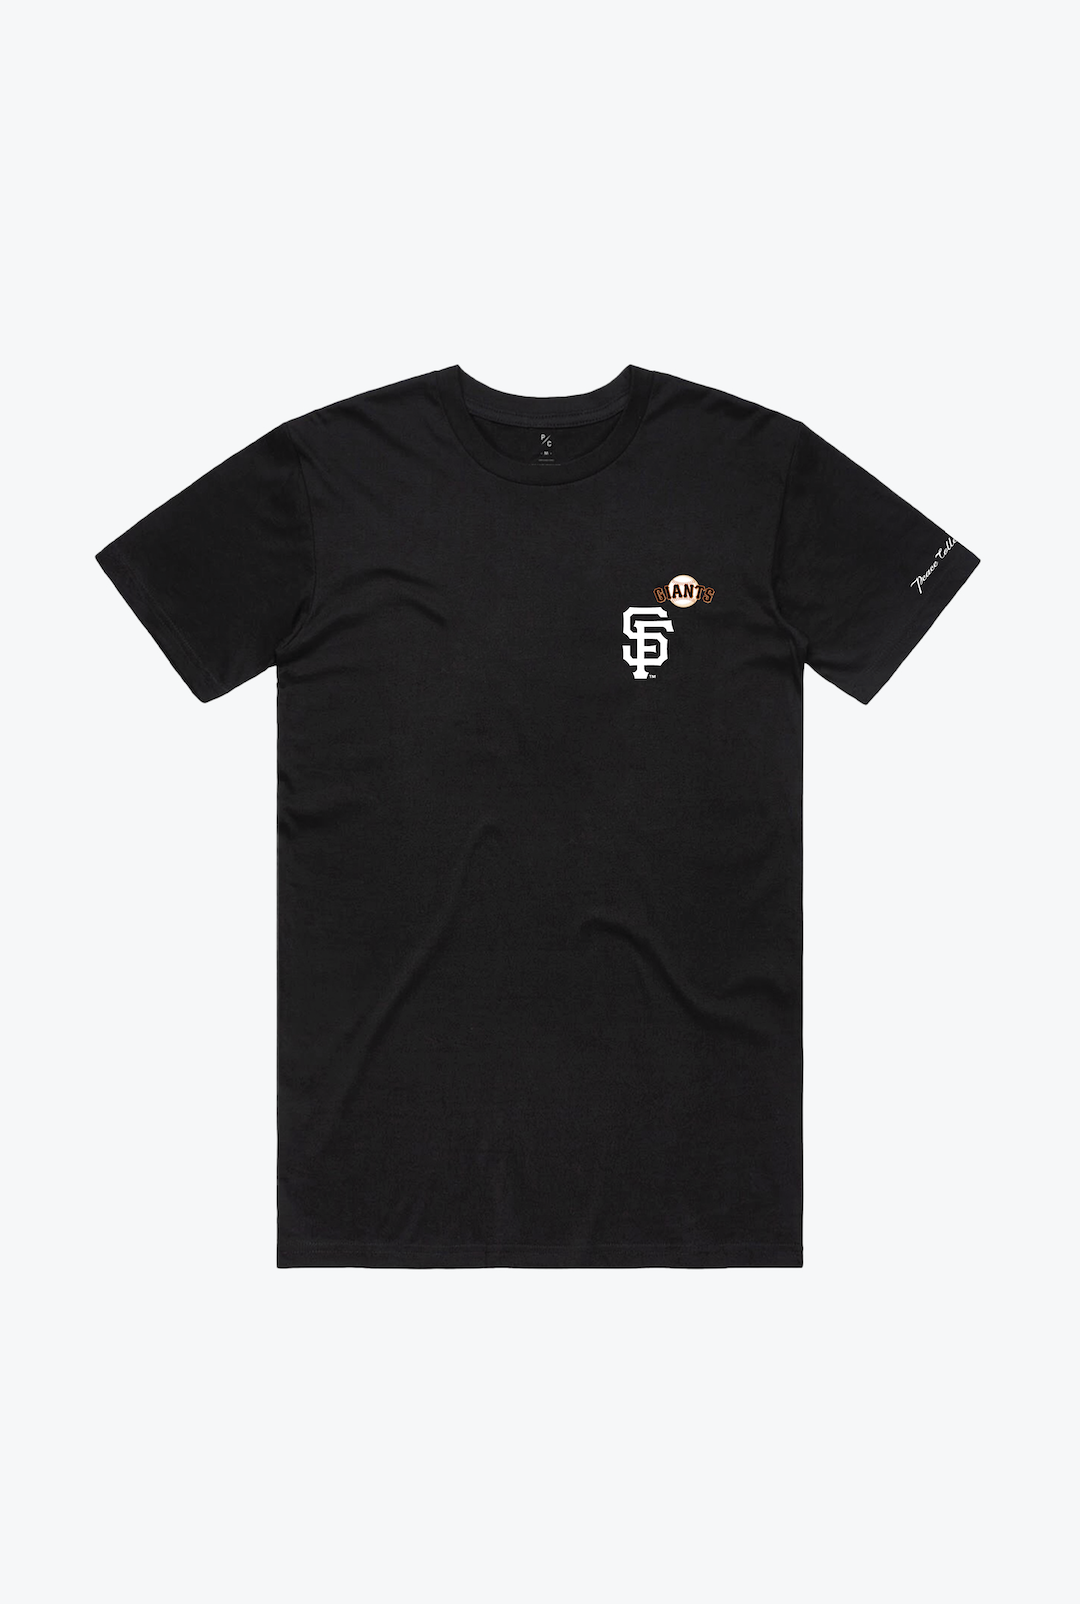 San Francisco Essentials T-Shirt - Black